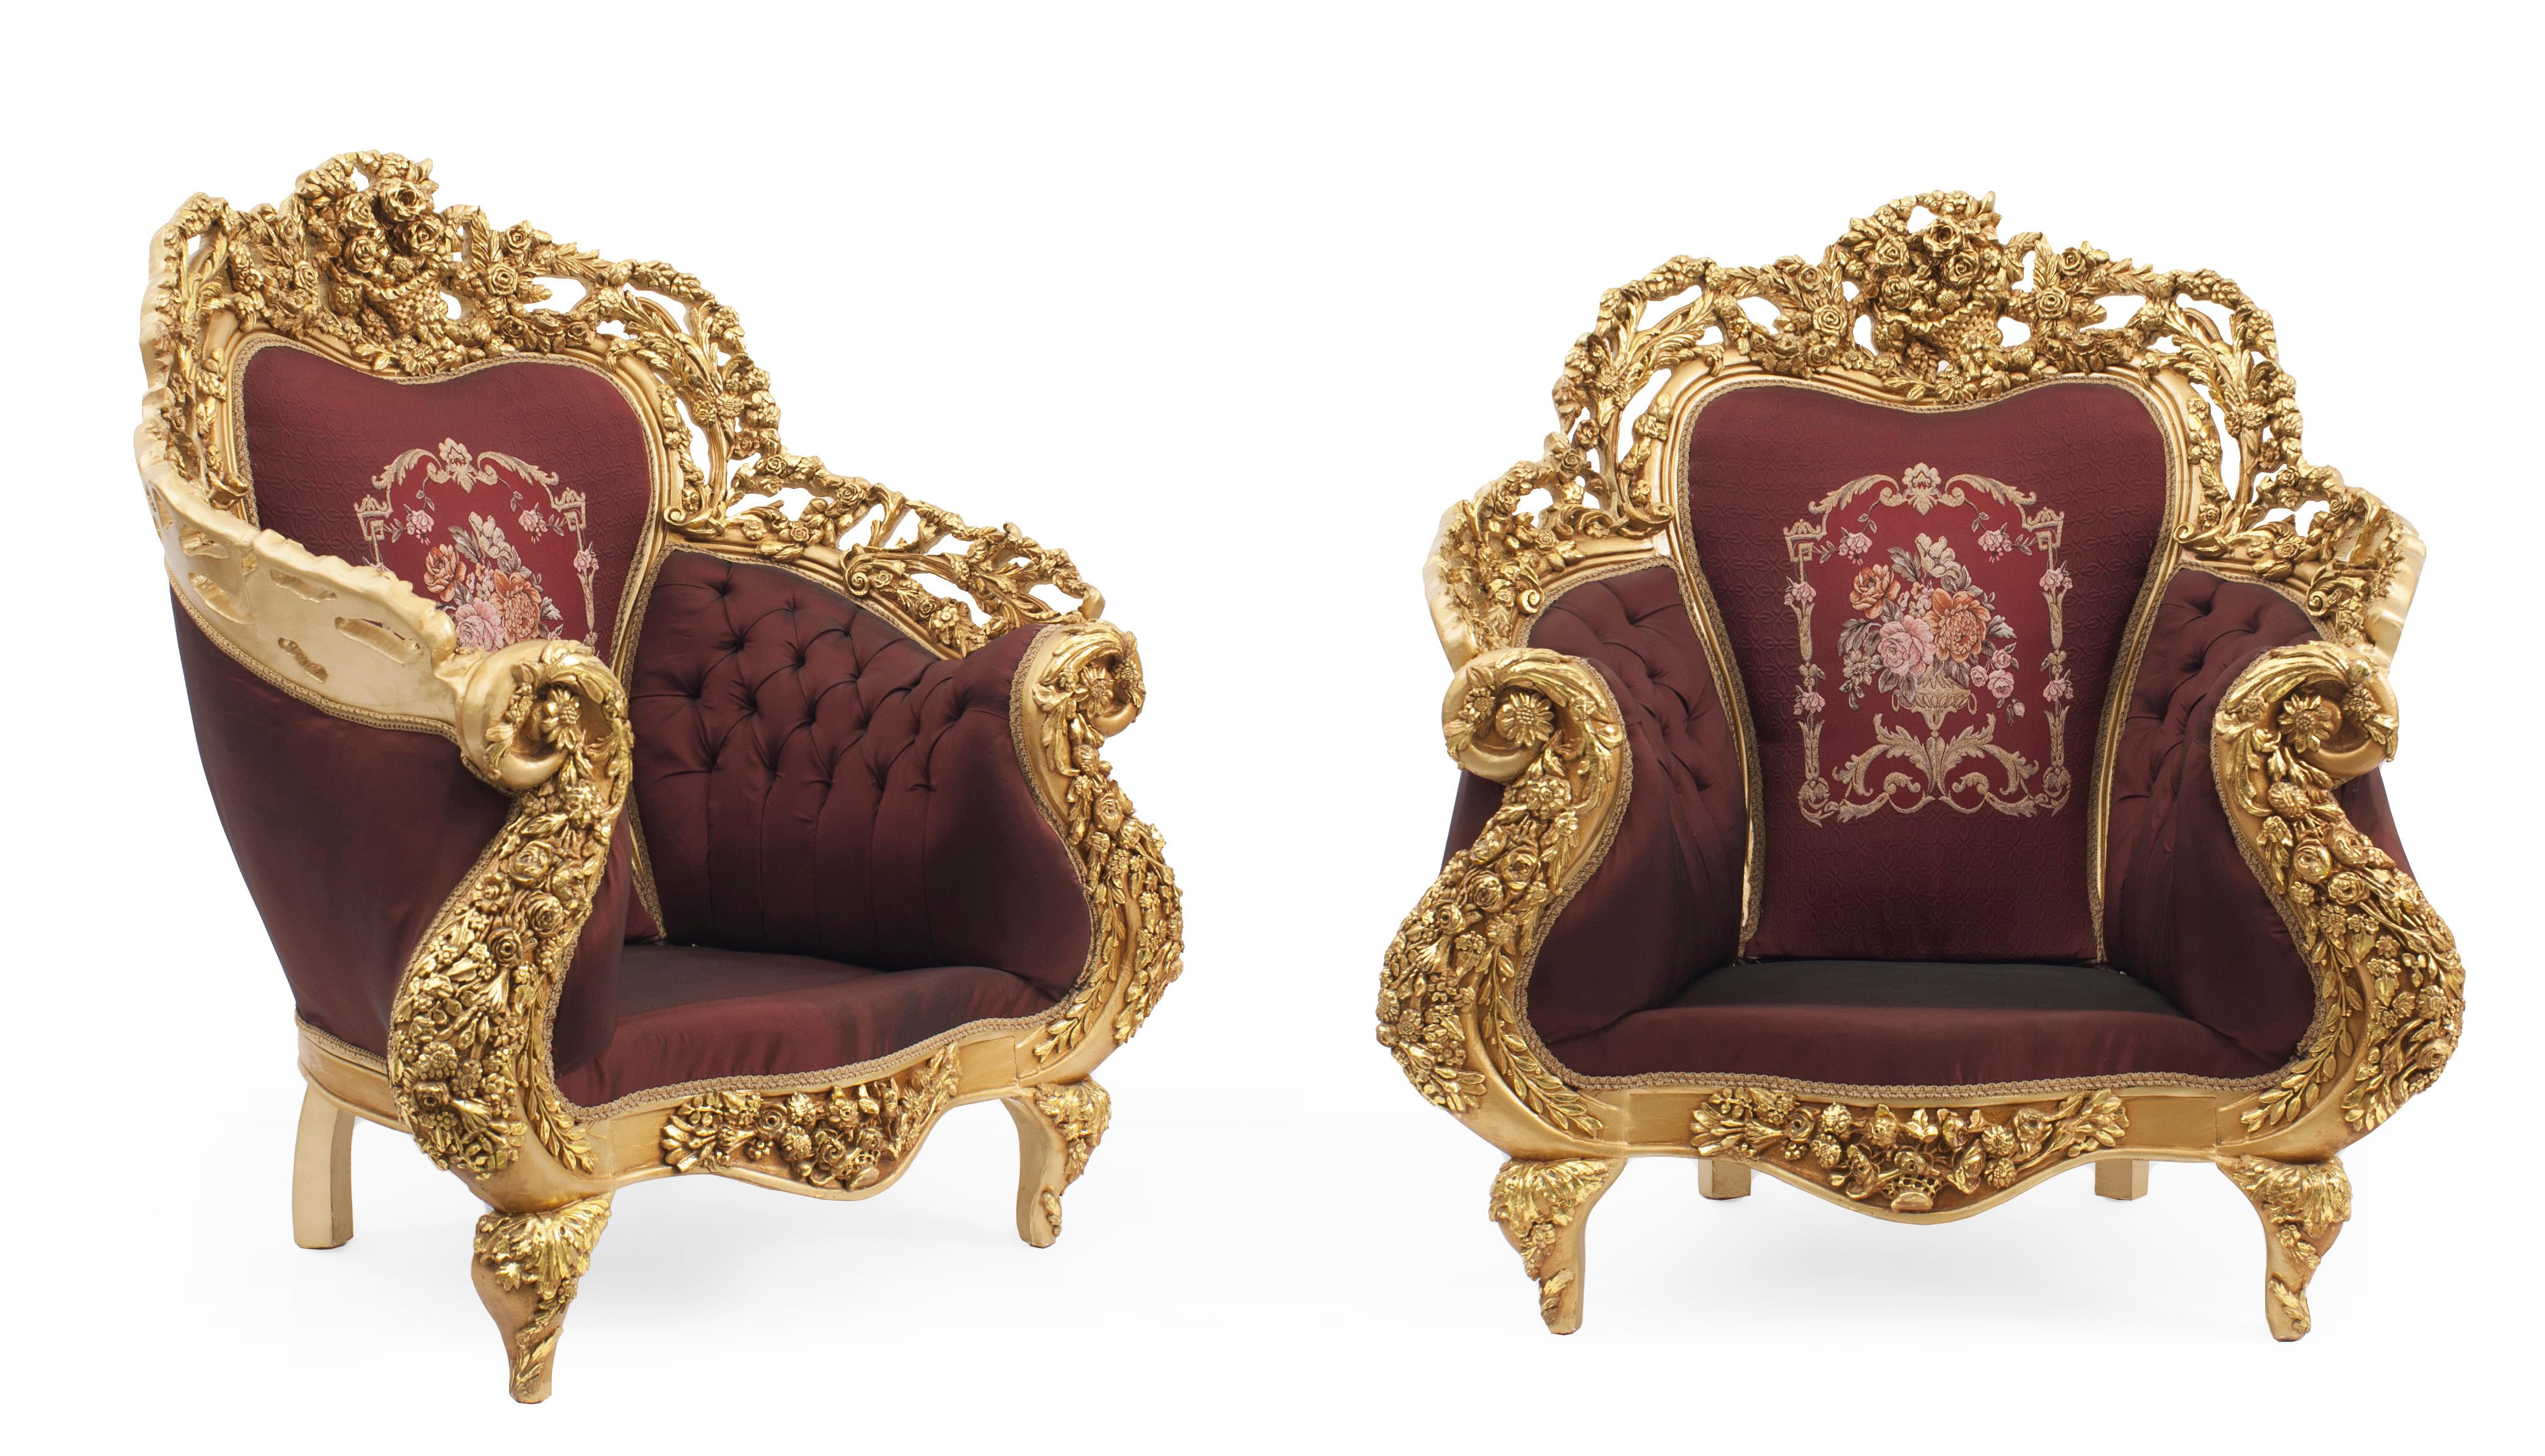 Paire de fauteuils italiens de style baroque du 20e siècle avec des cadres en bois filigrané doré et une tapisserie d'ameublement bordeaux avec des fleurs brodées et des coussins d'assise en velours bordeaux.